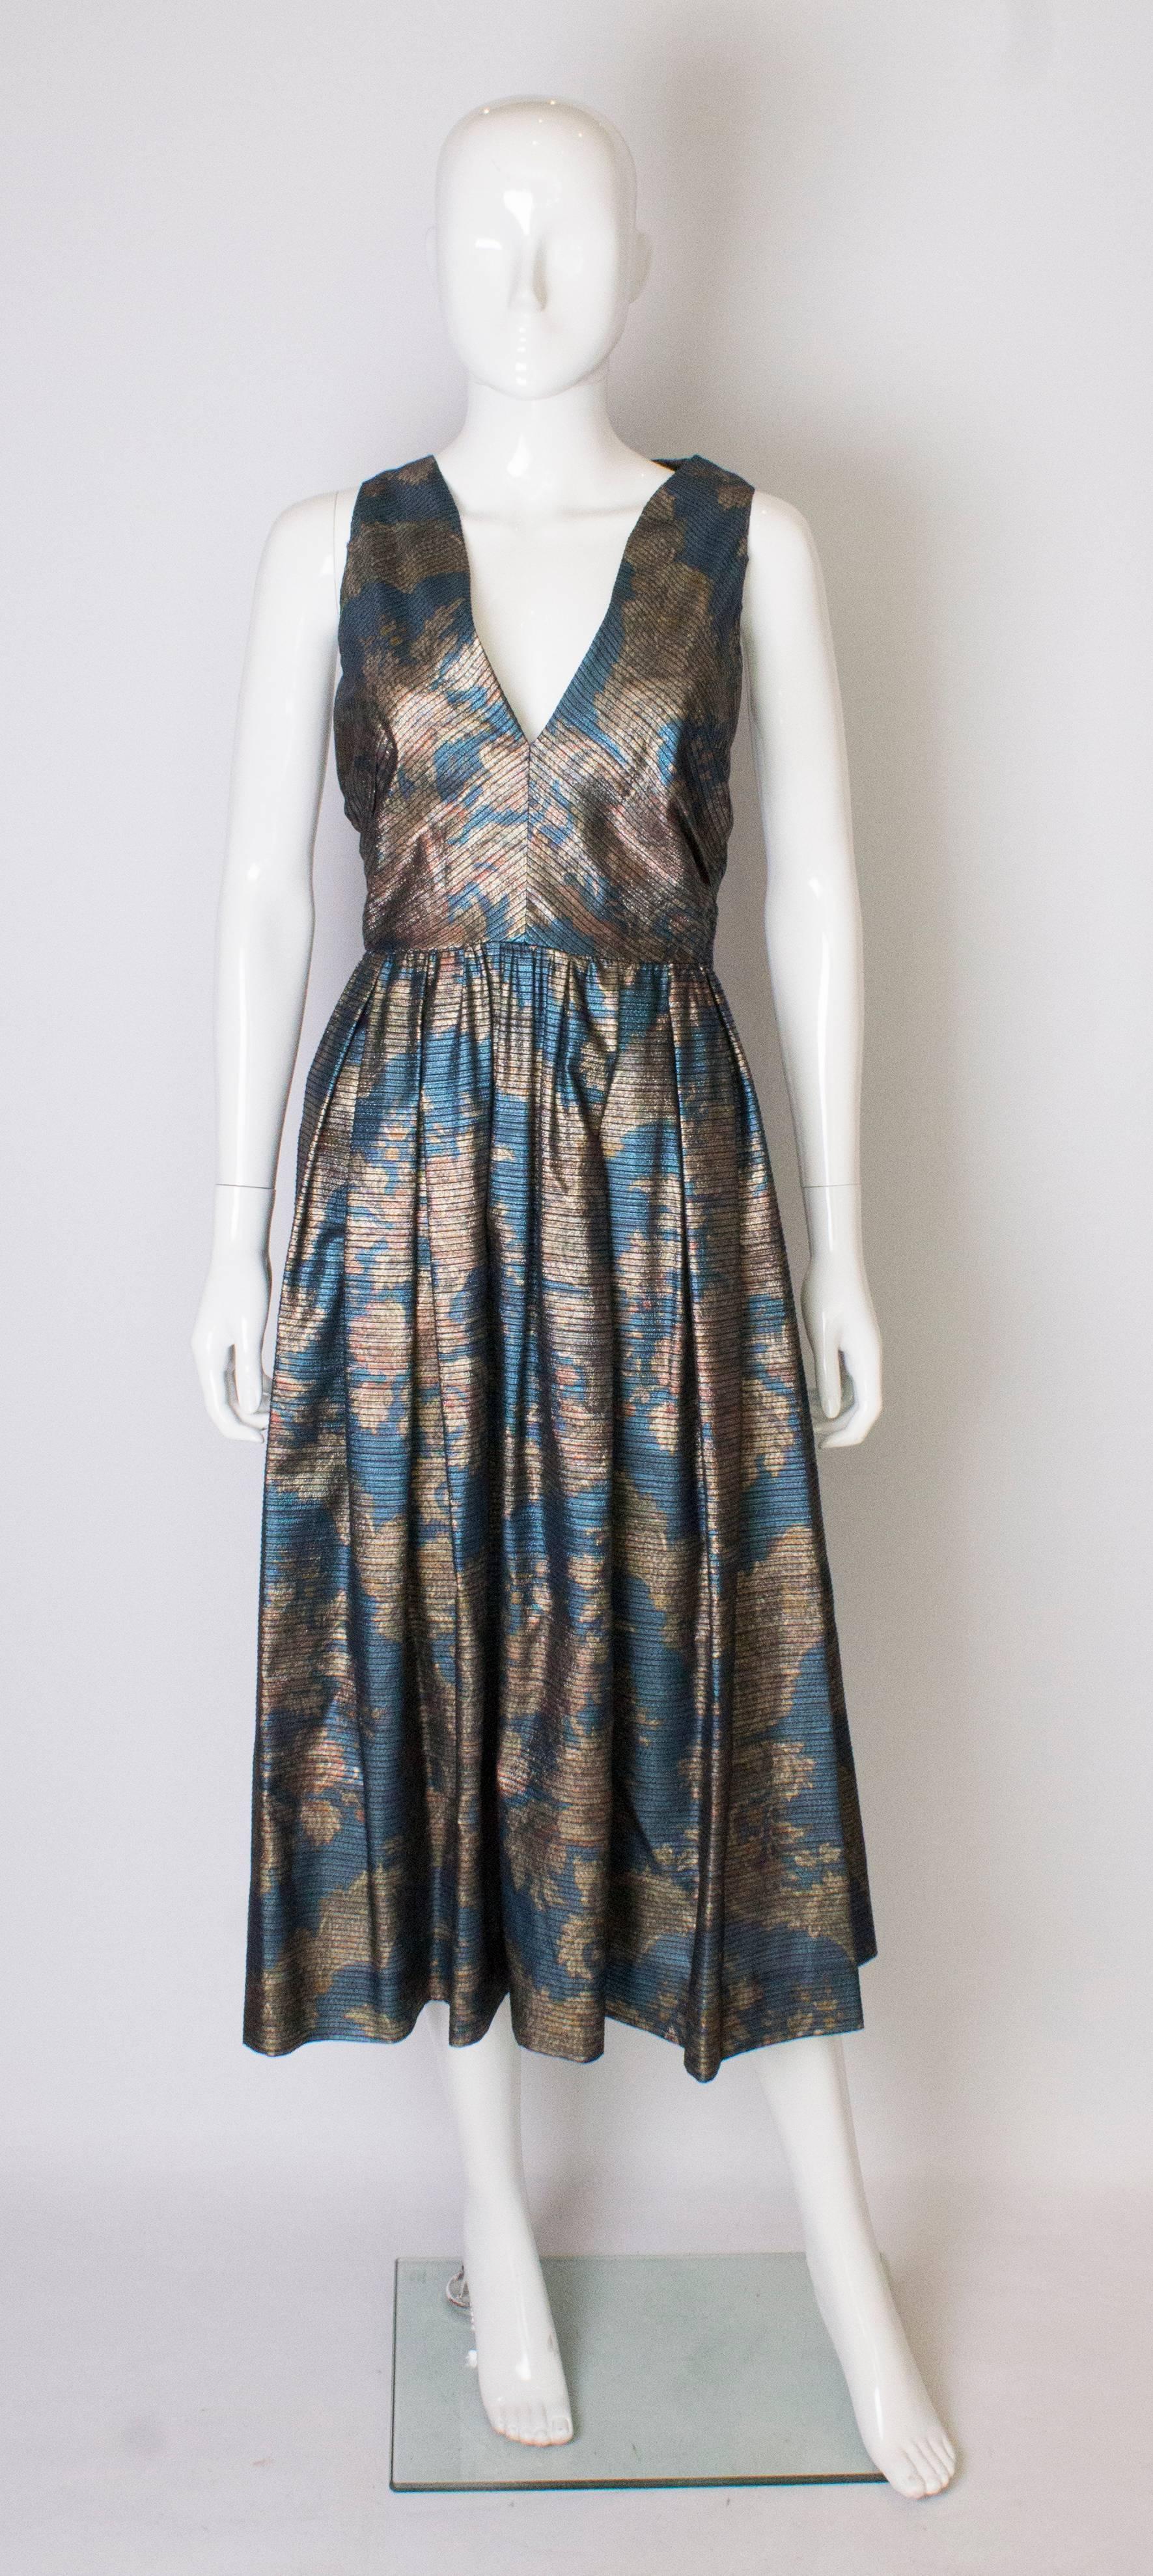 Ein wunderschönes Vintage-Kleid von Donald Campbell, in einem blauen, goldenen und rostfarbenen Stoff.
Das Kleid ist ärmellos, hat einen V-Ausschnitt und einen zentralen Reißverschluss am Rücken.